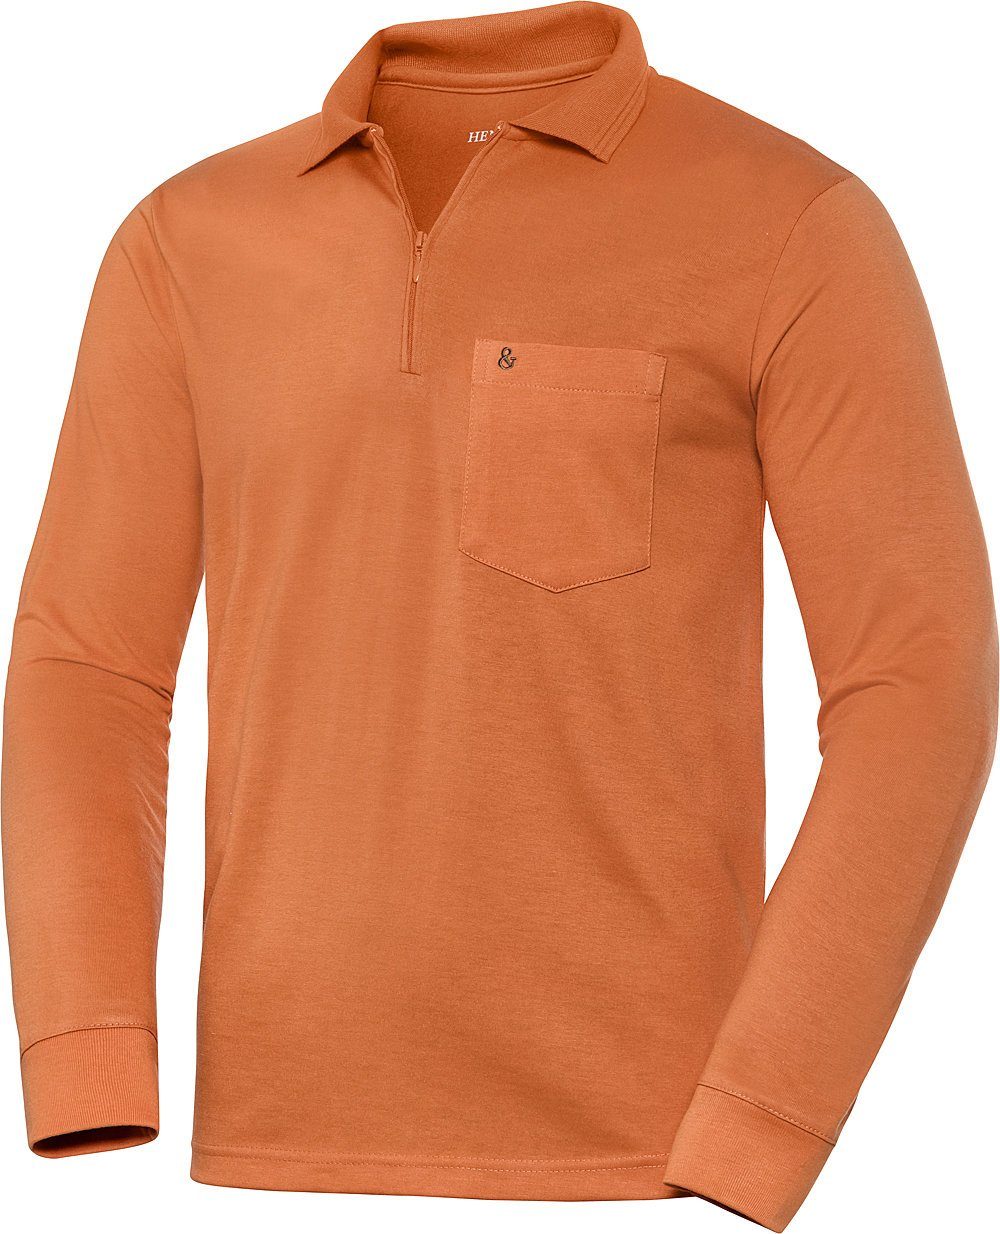 HENSON&HENSON Langarm-Poloshirt superweiches Jersey-Gewebe orange